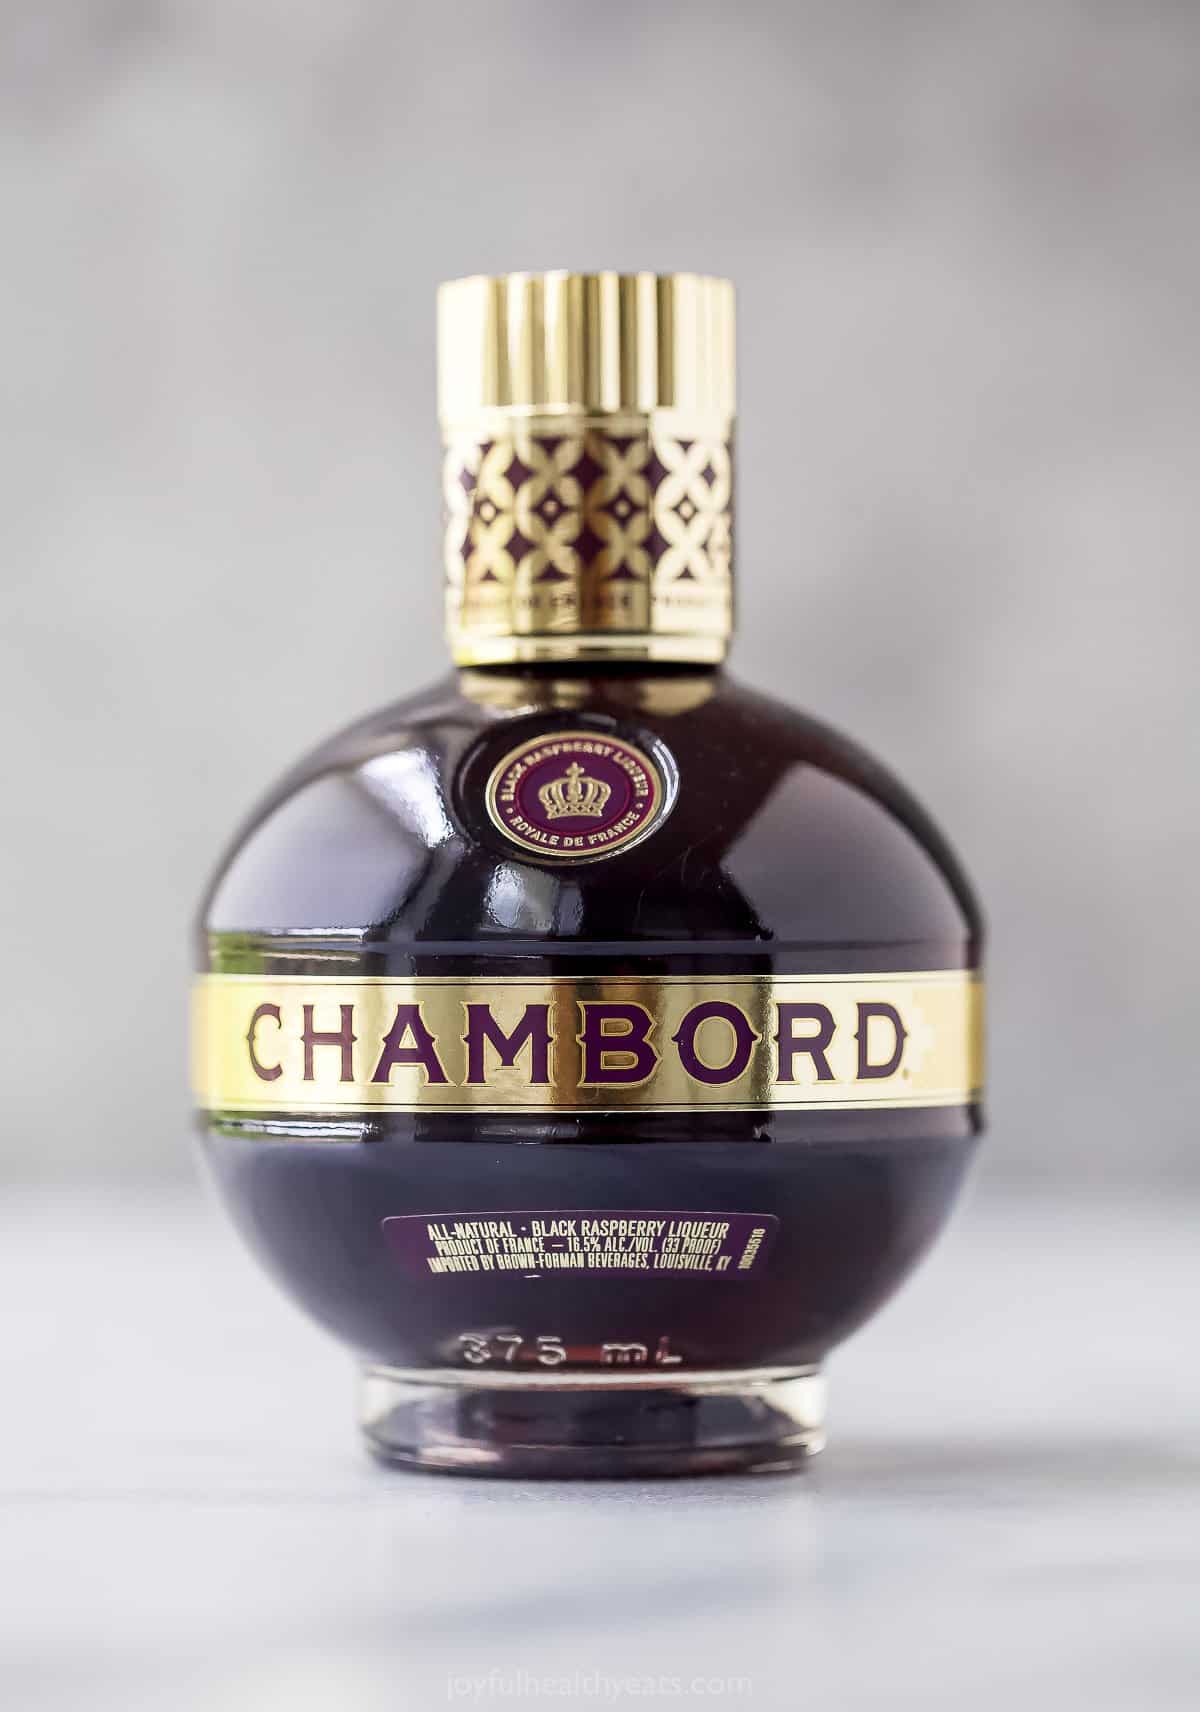 a bottle of Chambord liqueur